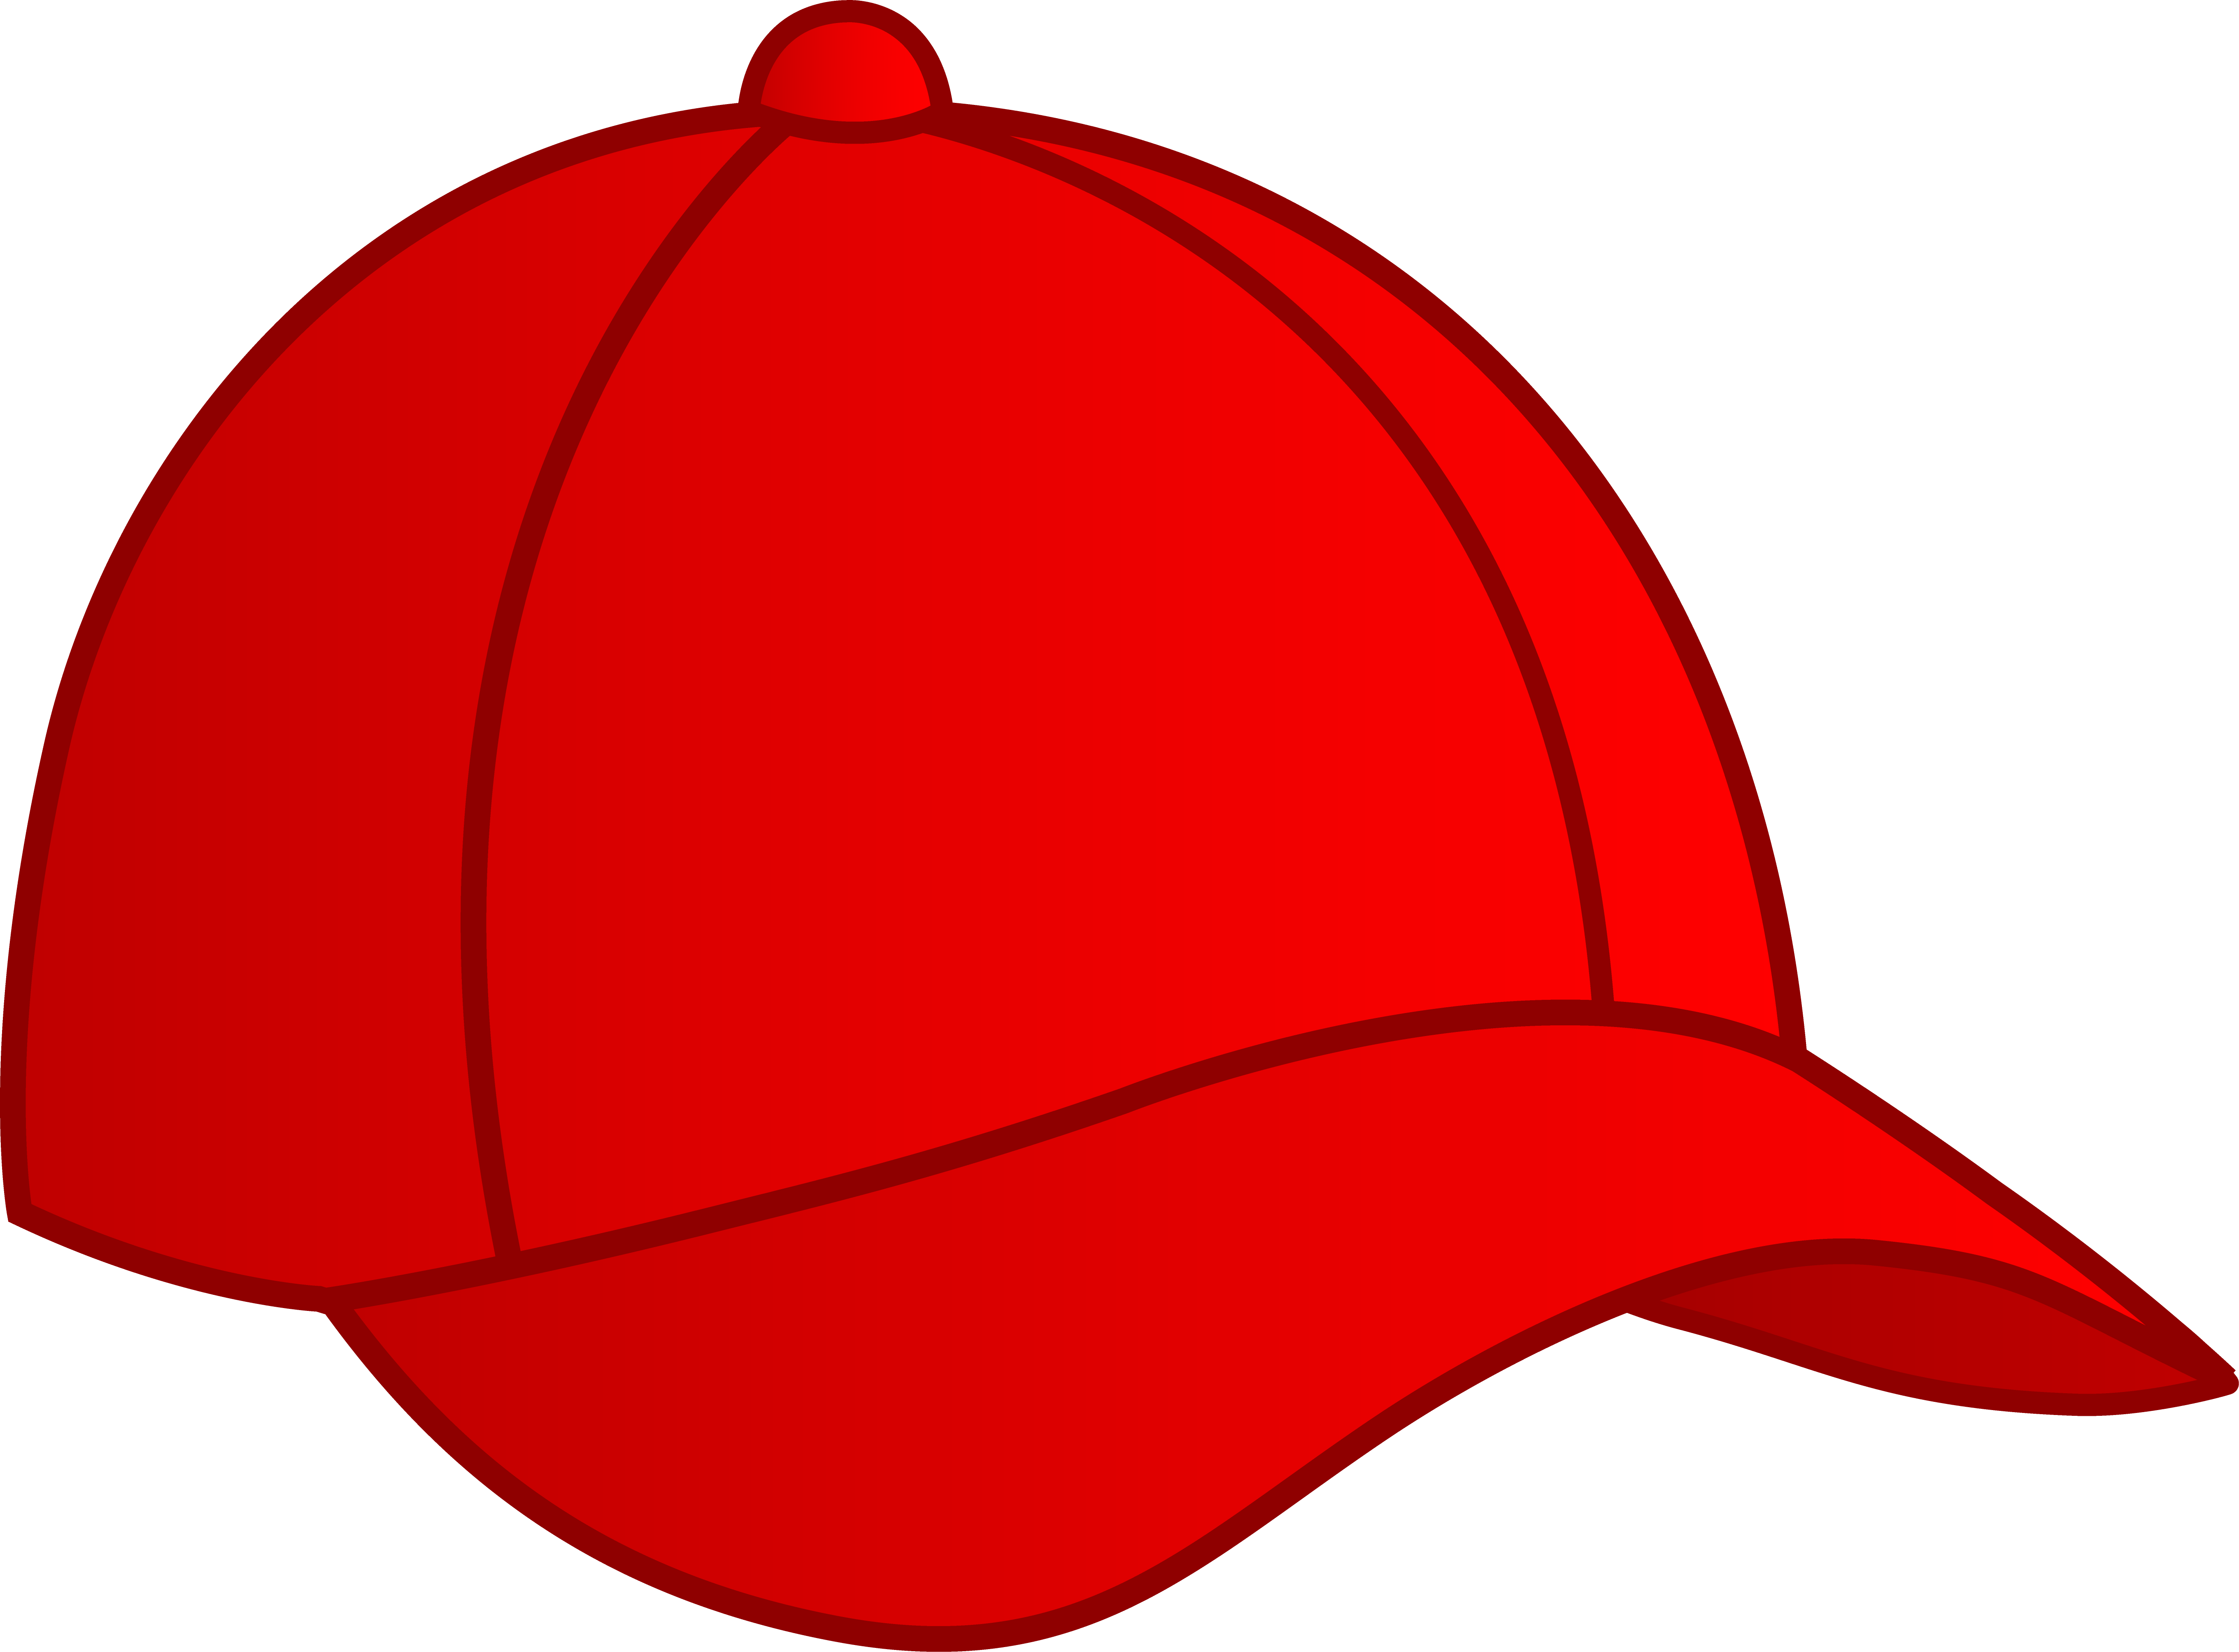 White Baseball Cap Clip Art